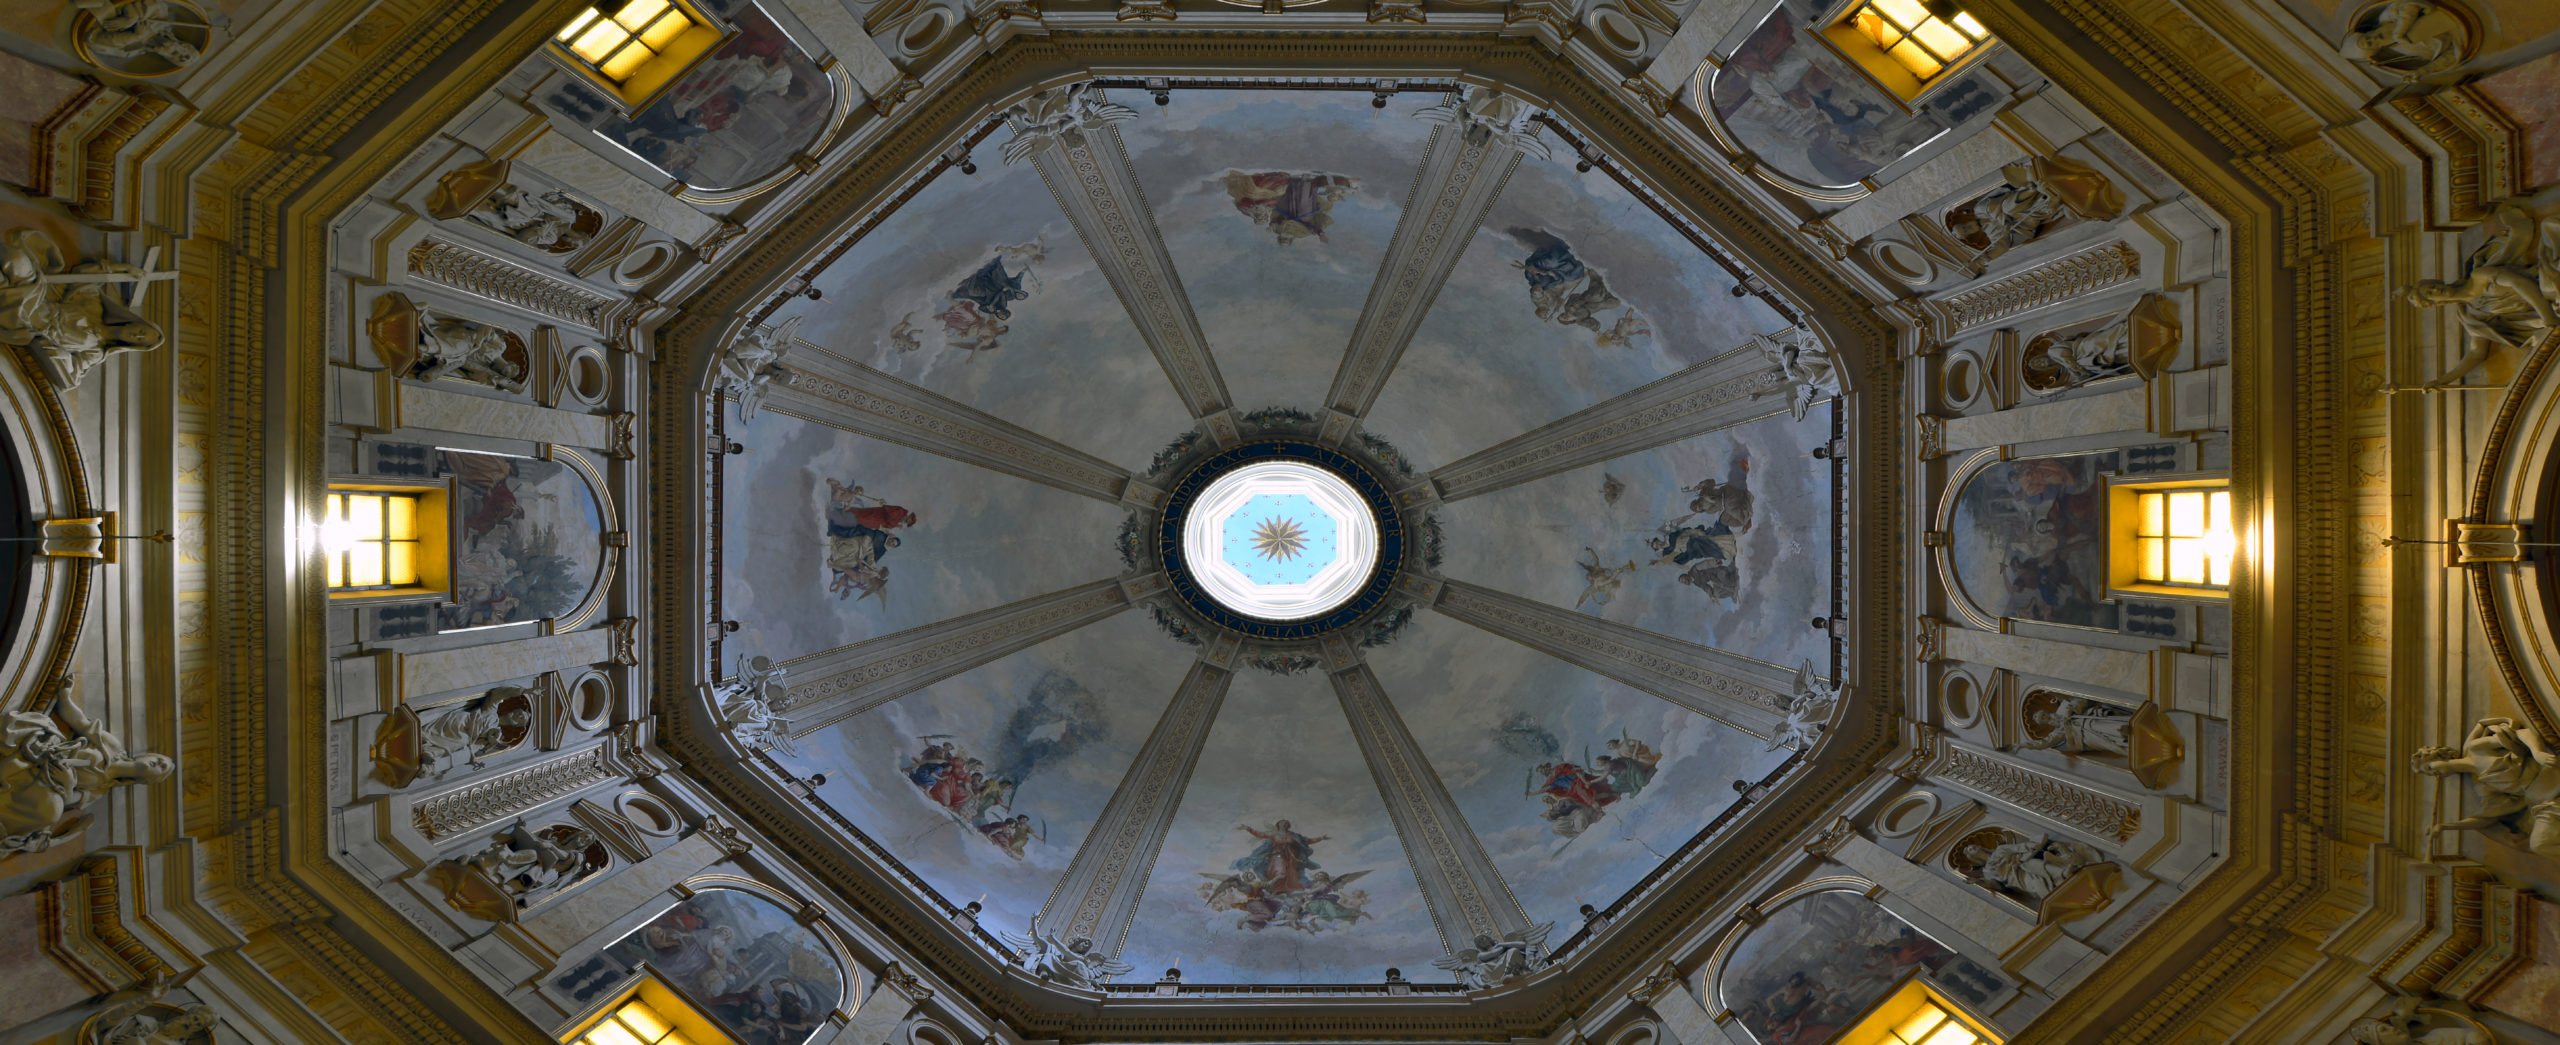 Montefiascone - VT - Cupola della Cattedrale di Santa Margherita